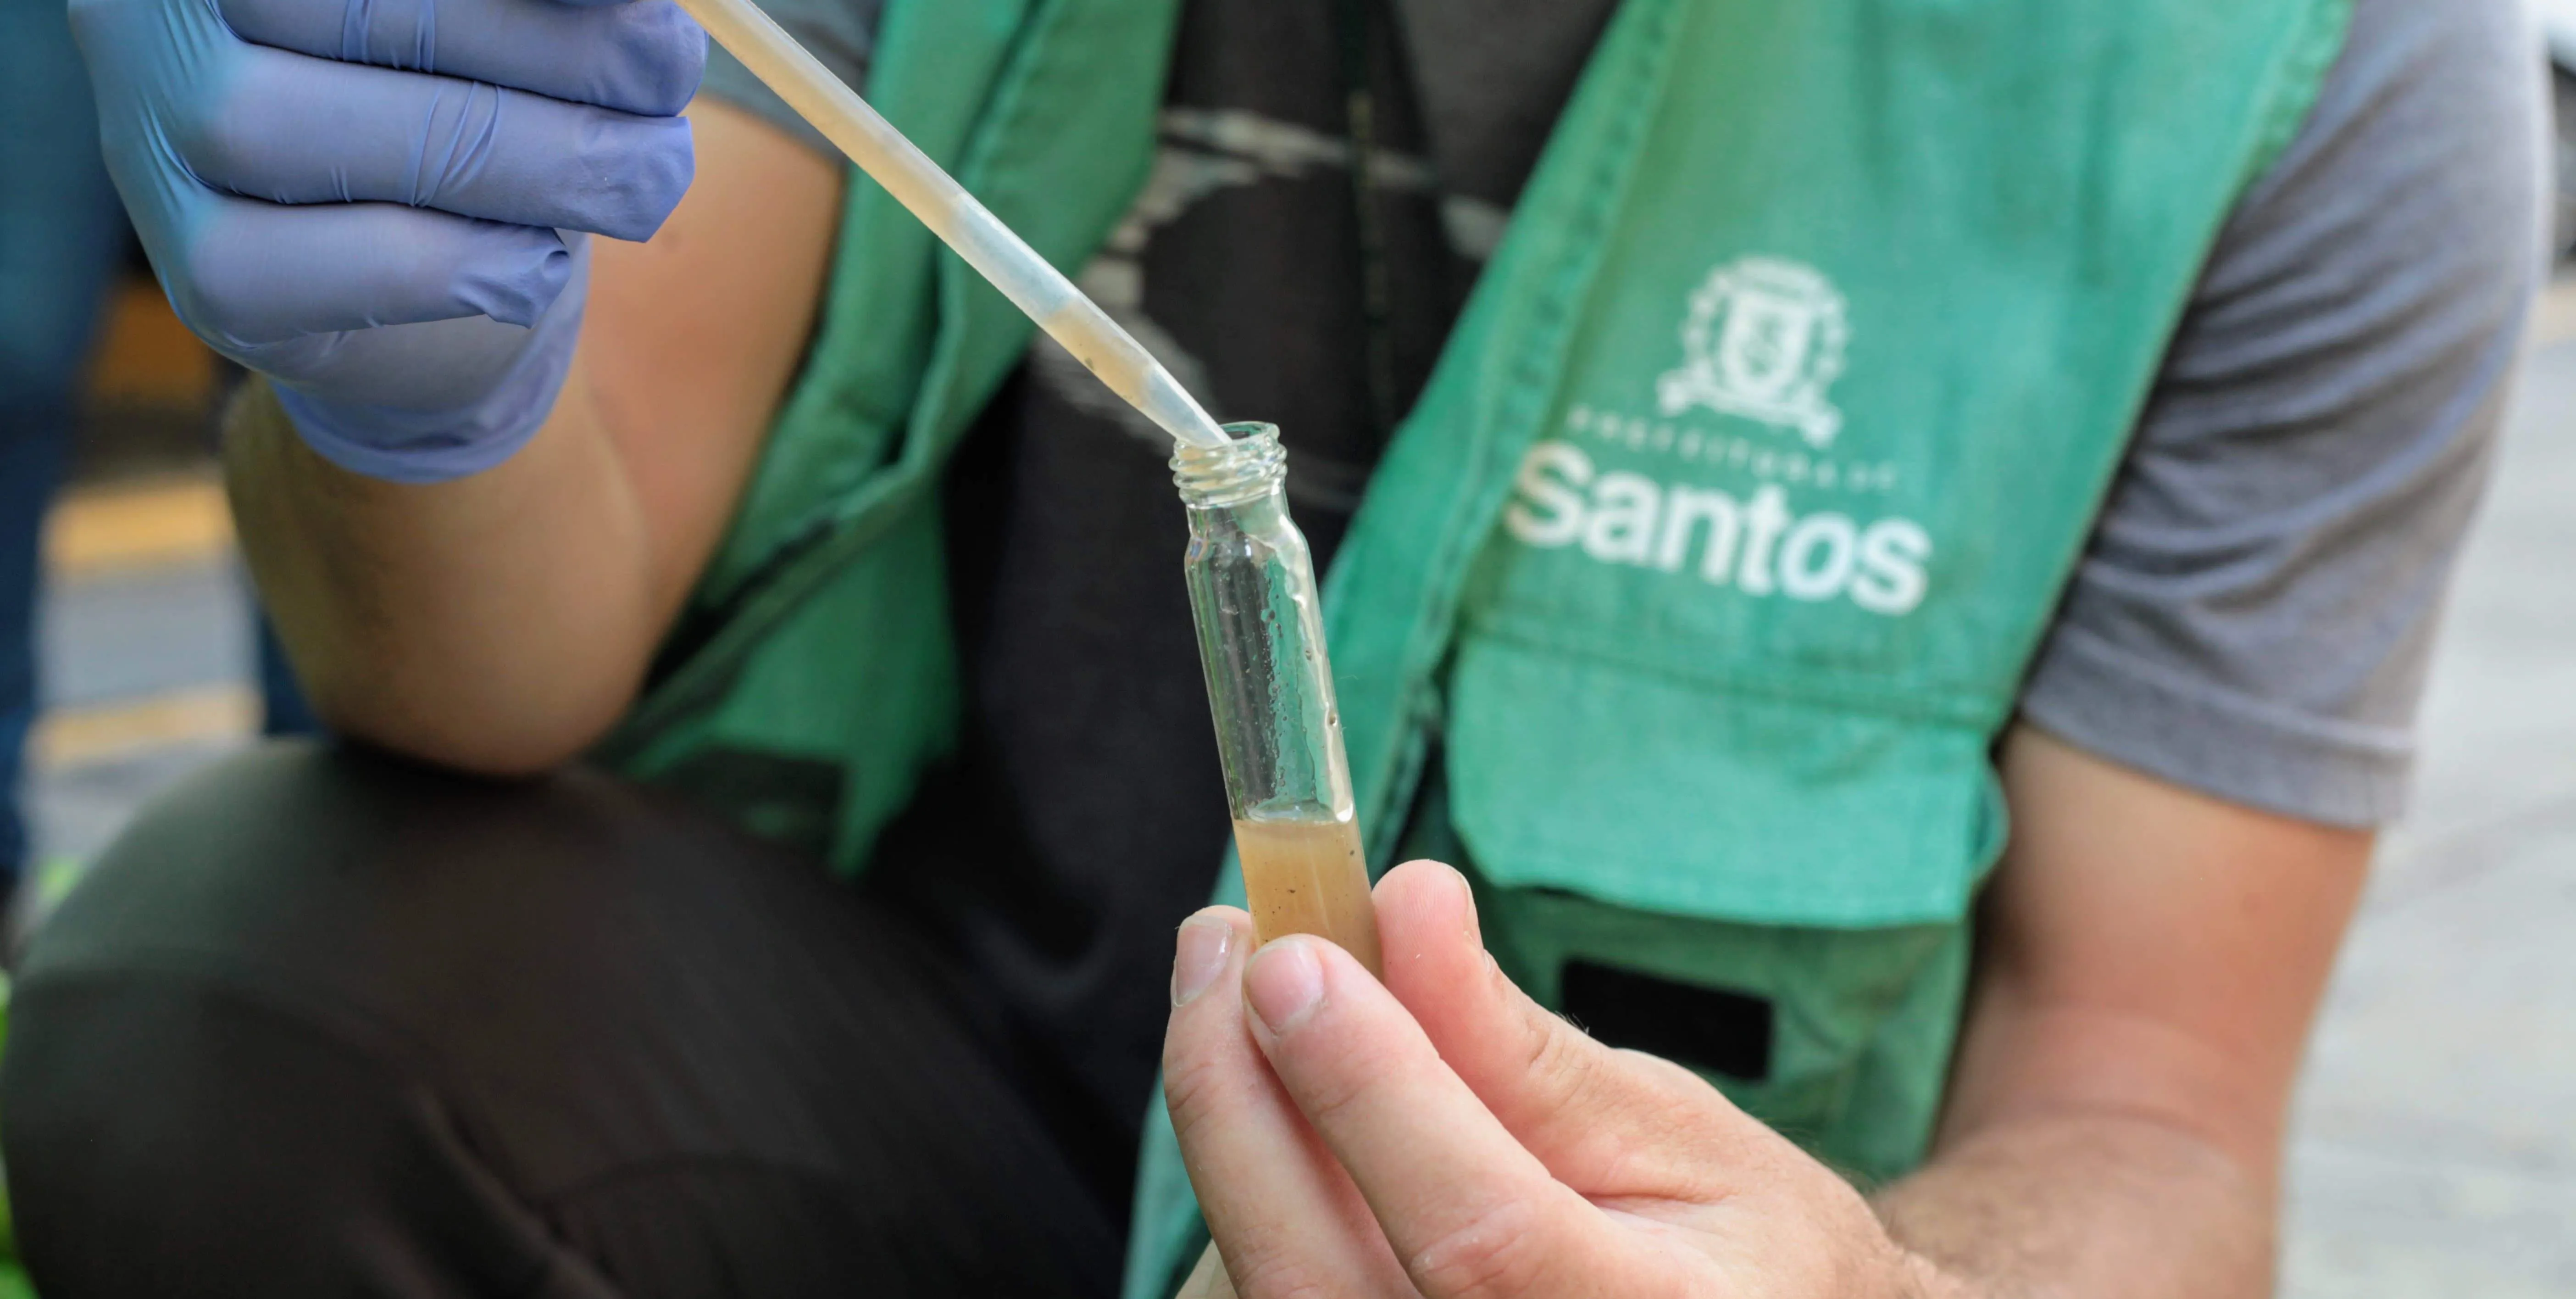   Santos terá Dia D de Mobilização contra o Aedes aegypti neste sábado  